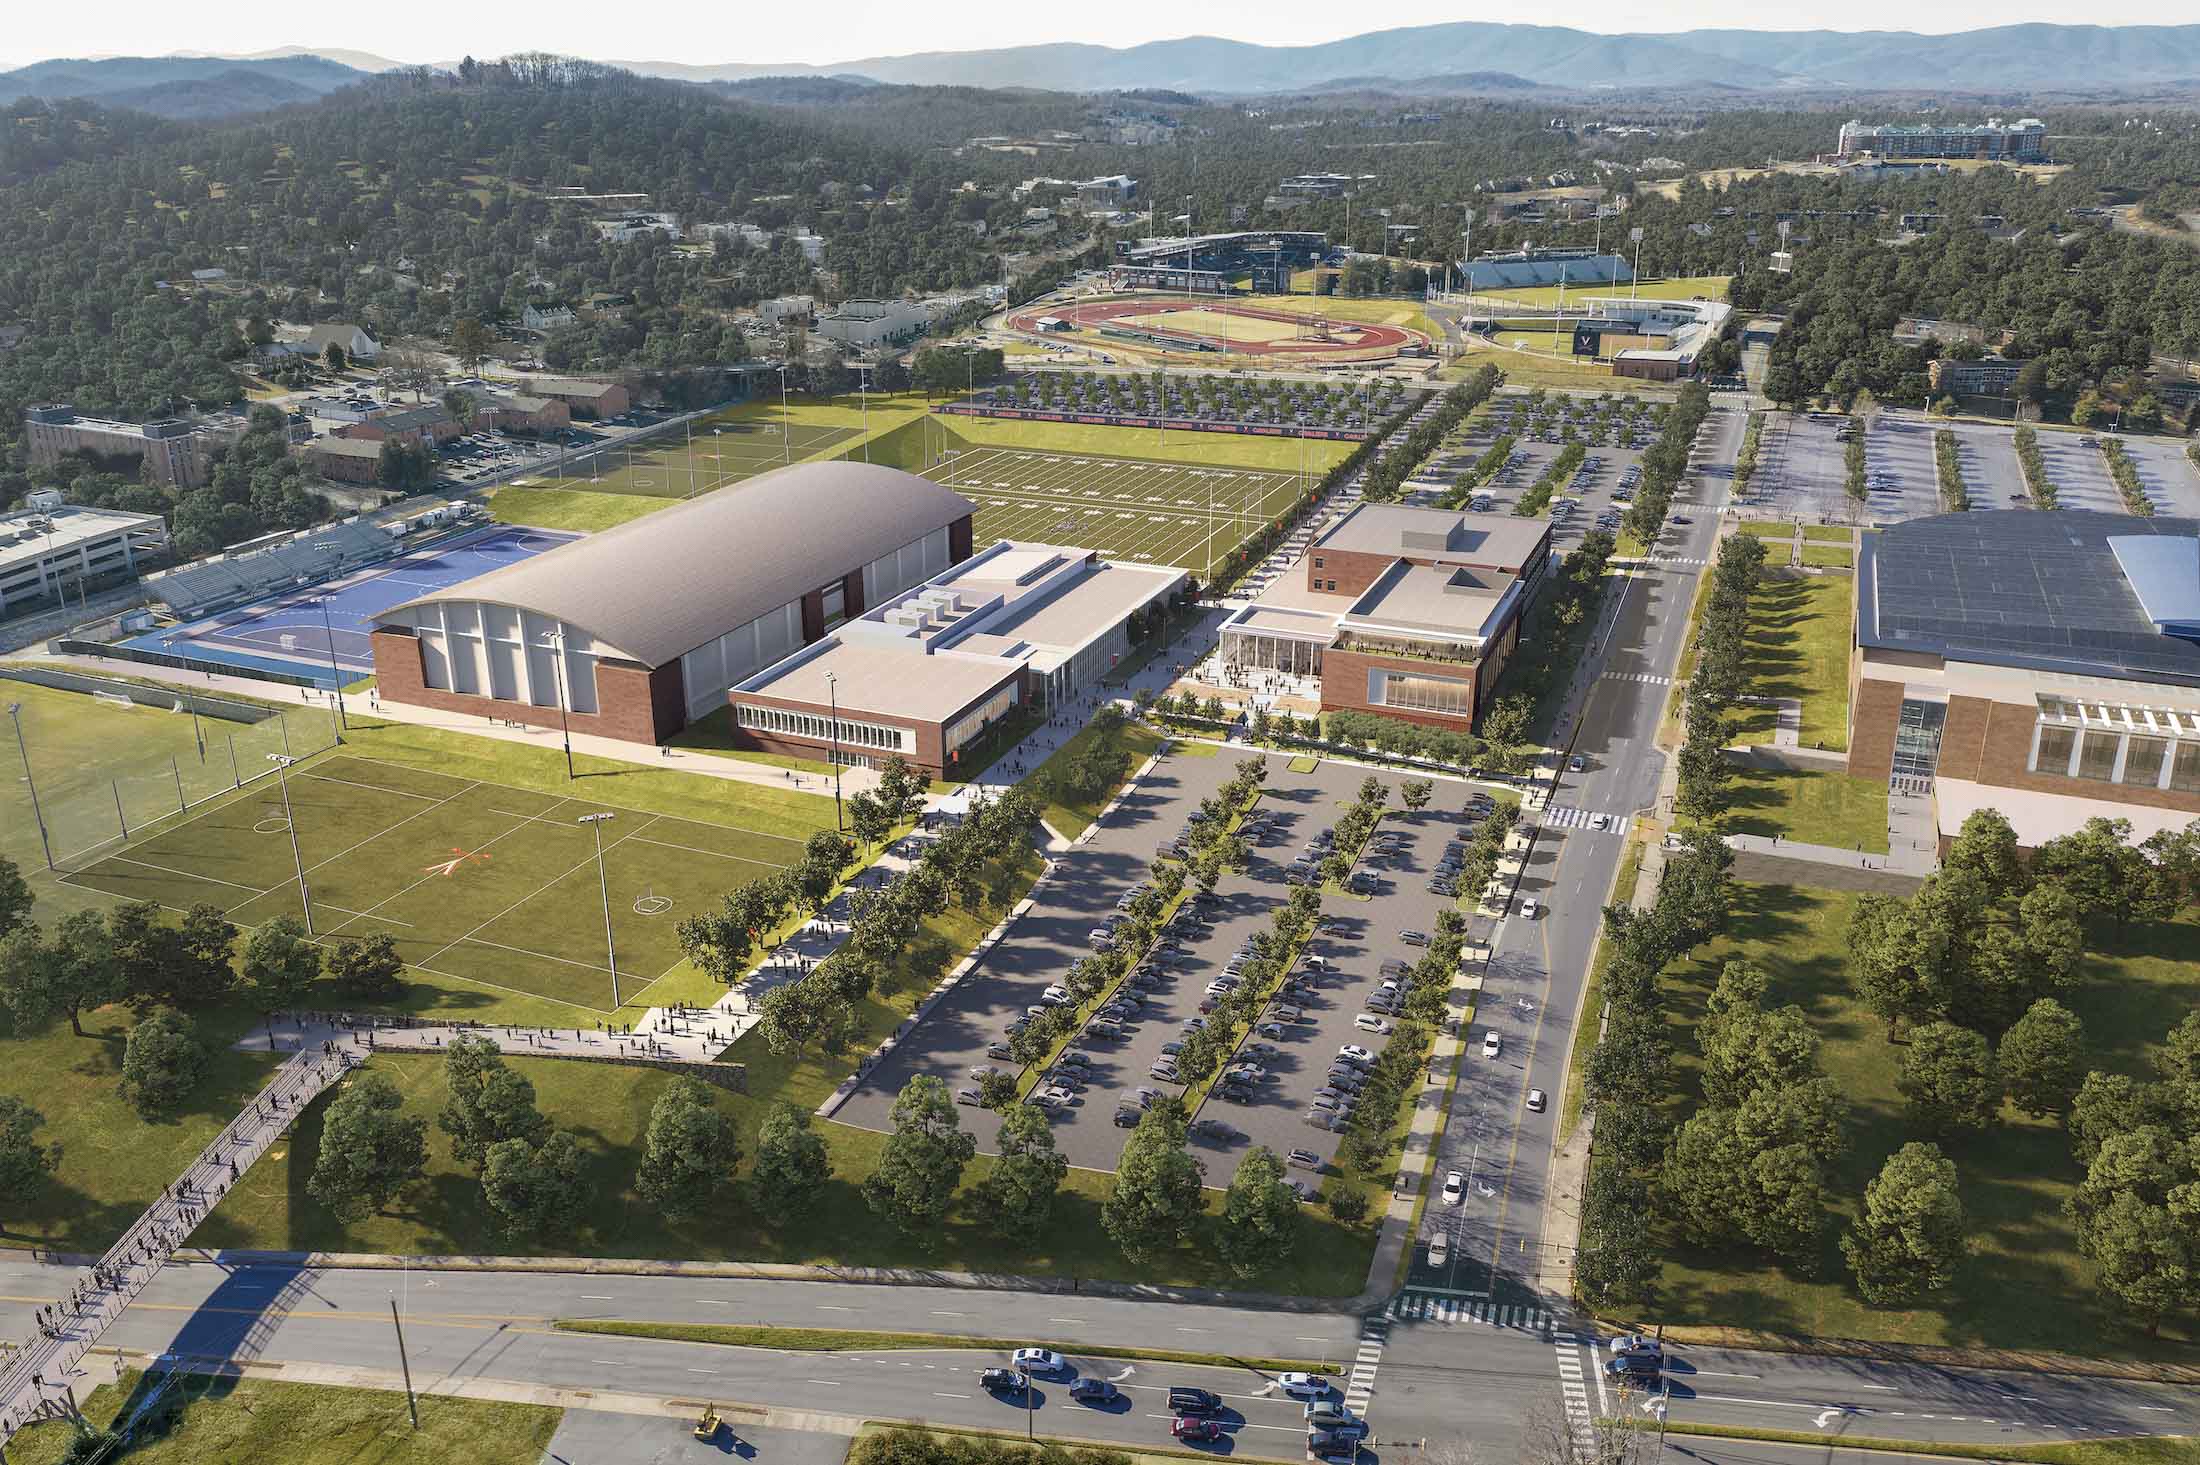 Aerial view of the UVA athletics complex